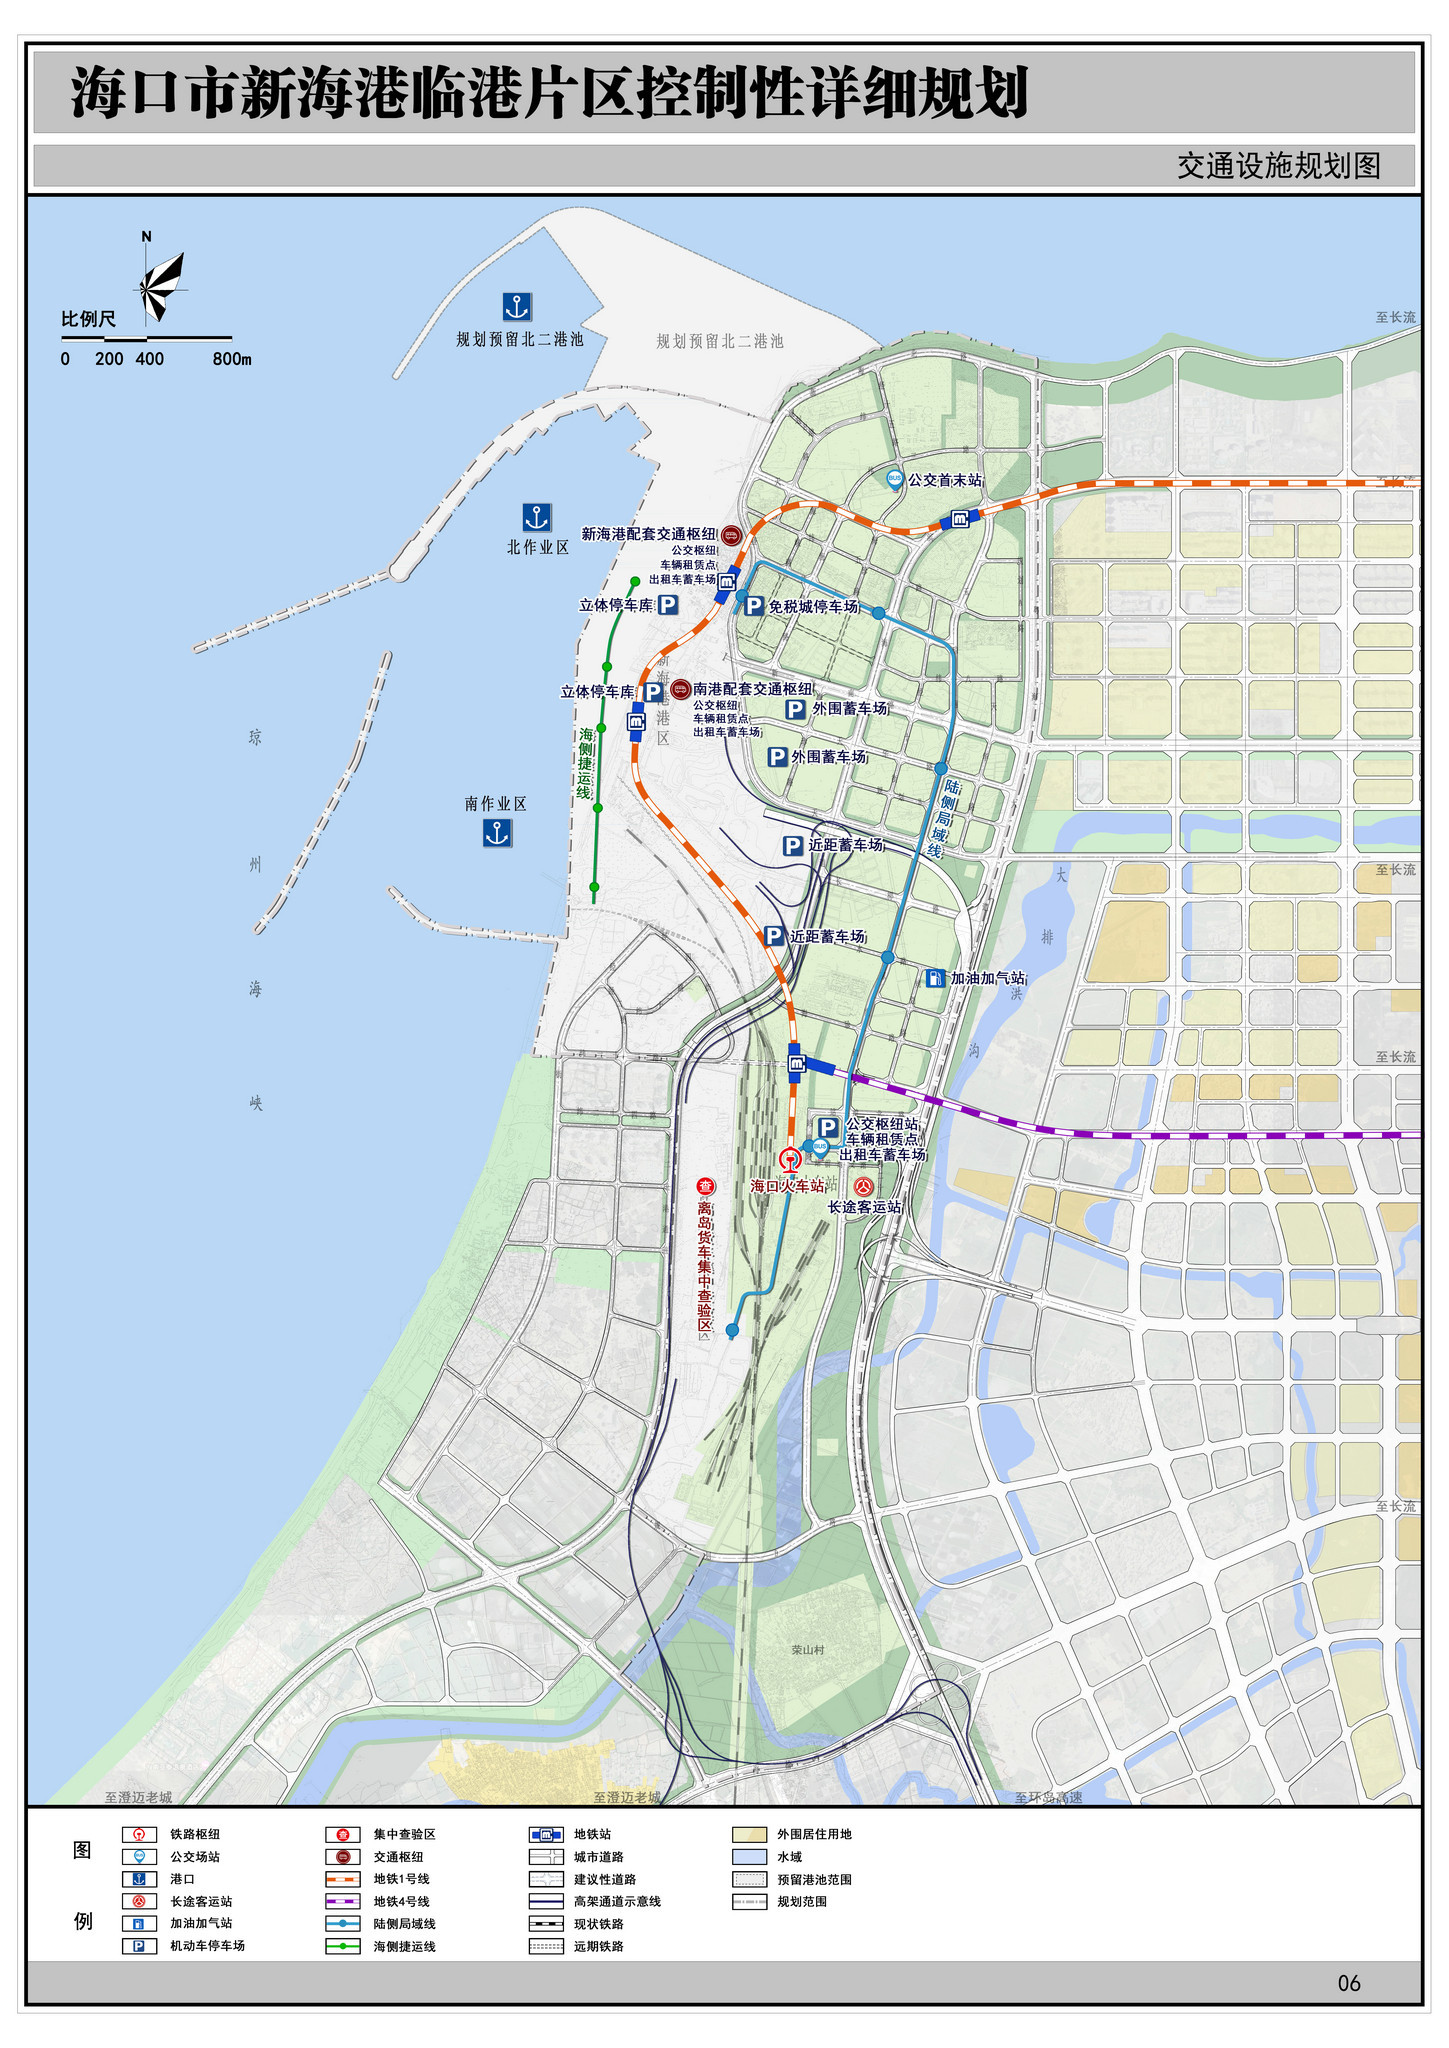 规建2条地铁线路 海口新海港临港片区和金沙湾片区规划公示